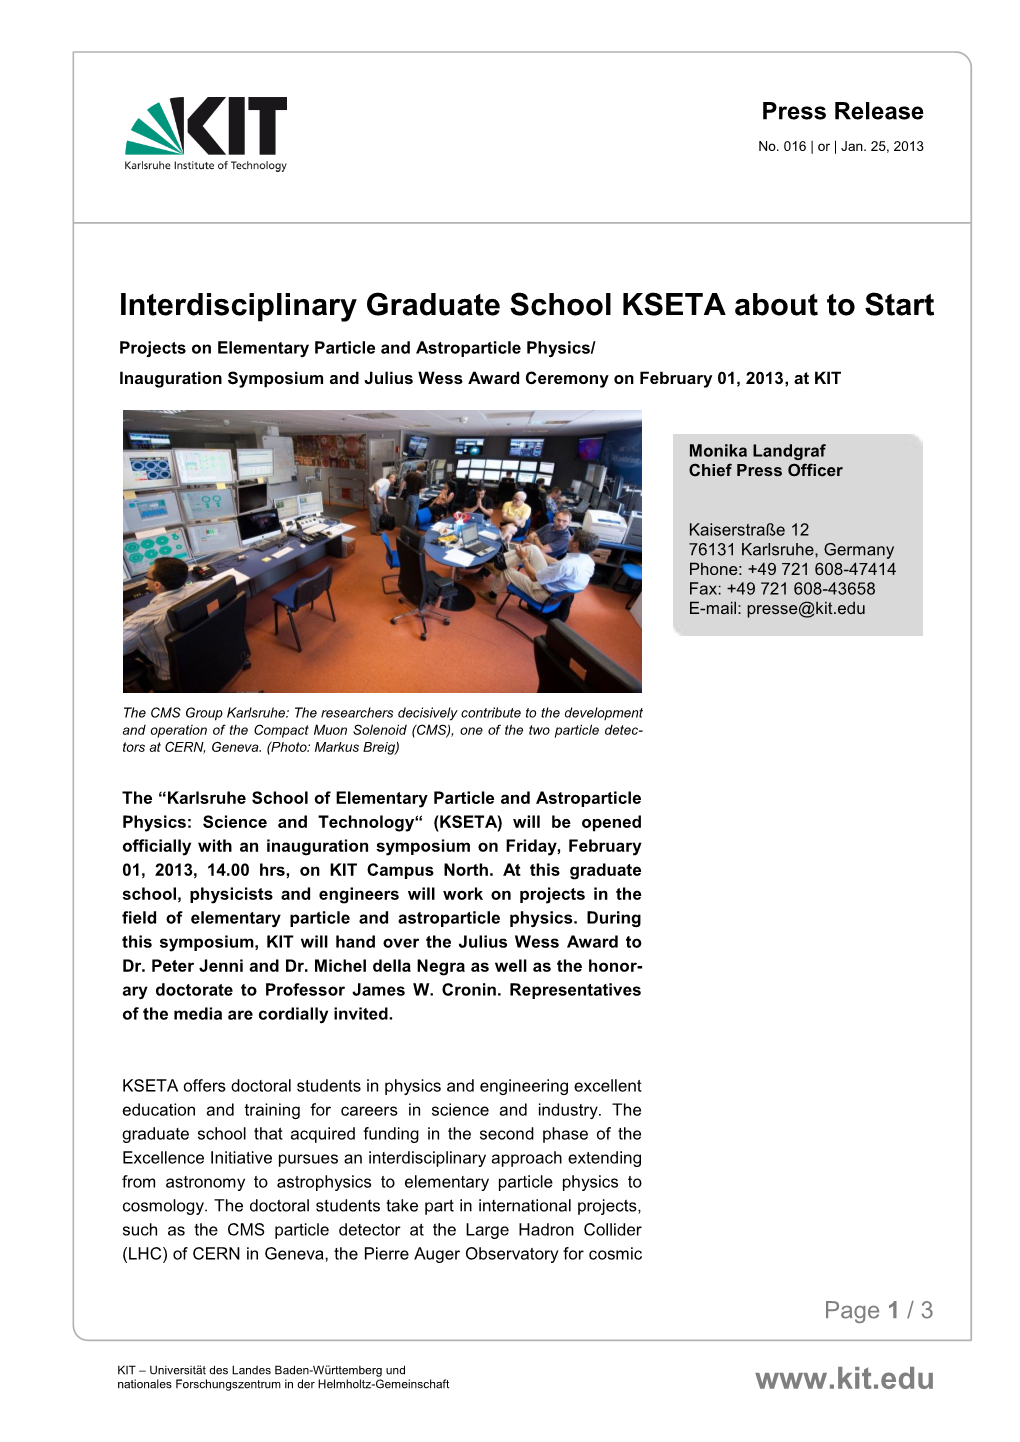 Interdisziplinäre Graduiertenschule KSETA Startet